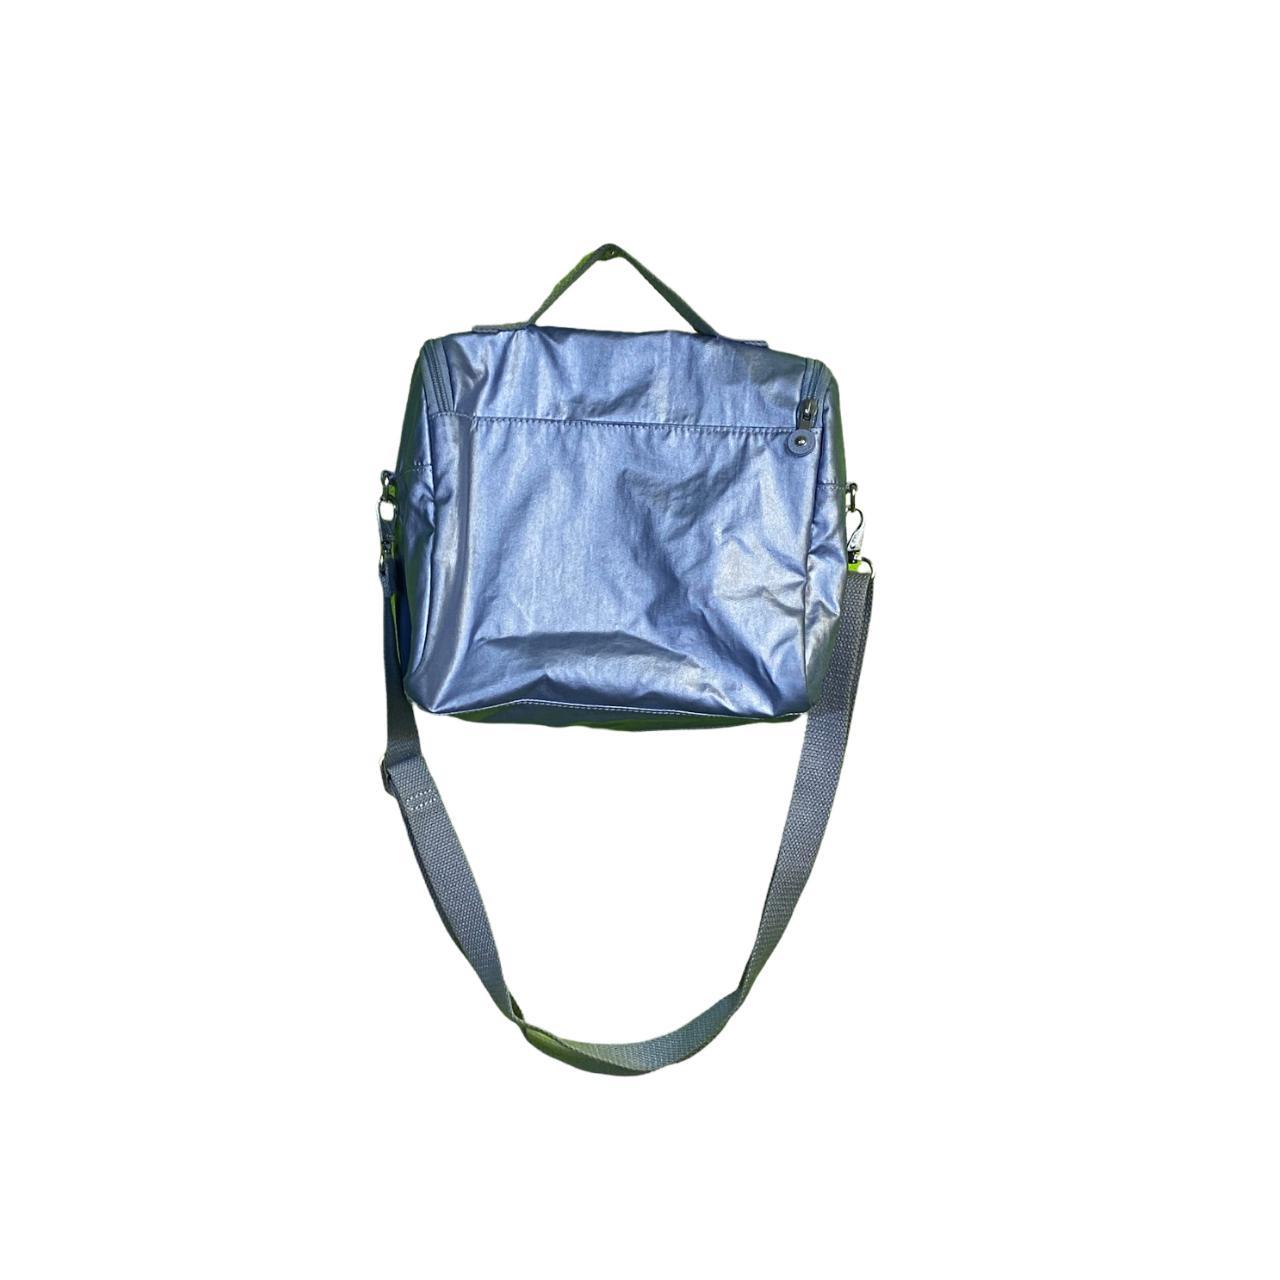 Kipling Women's Blue Bag (2)